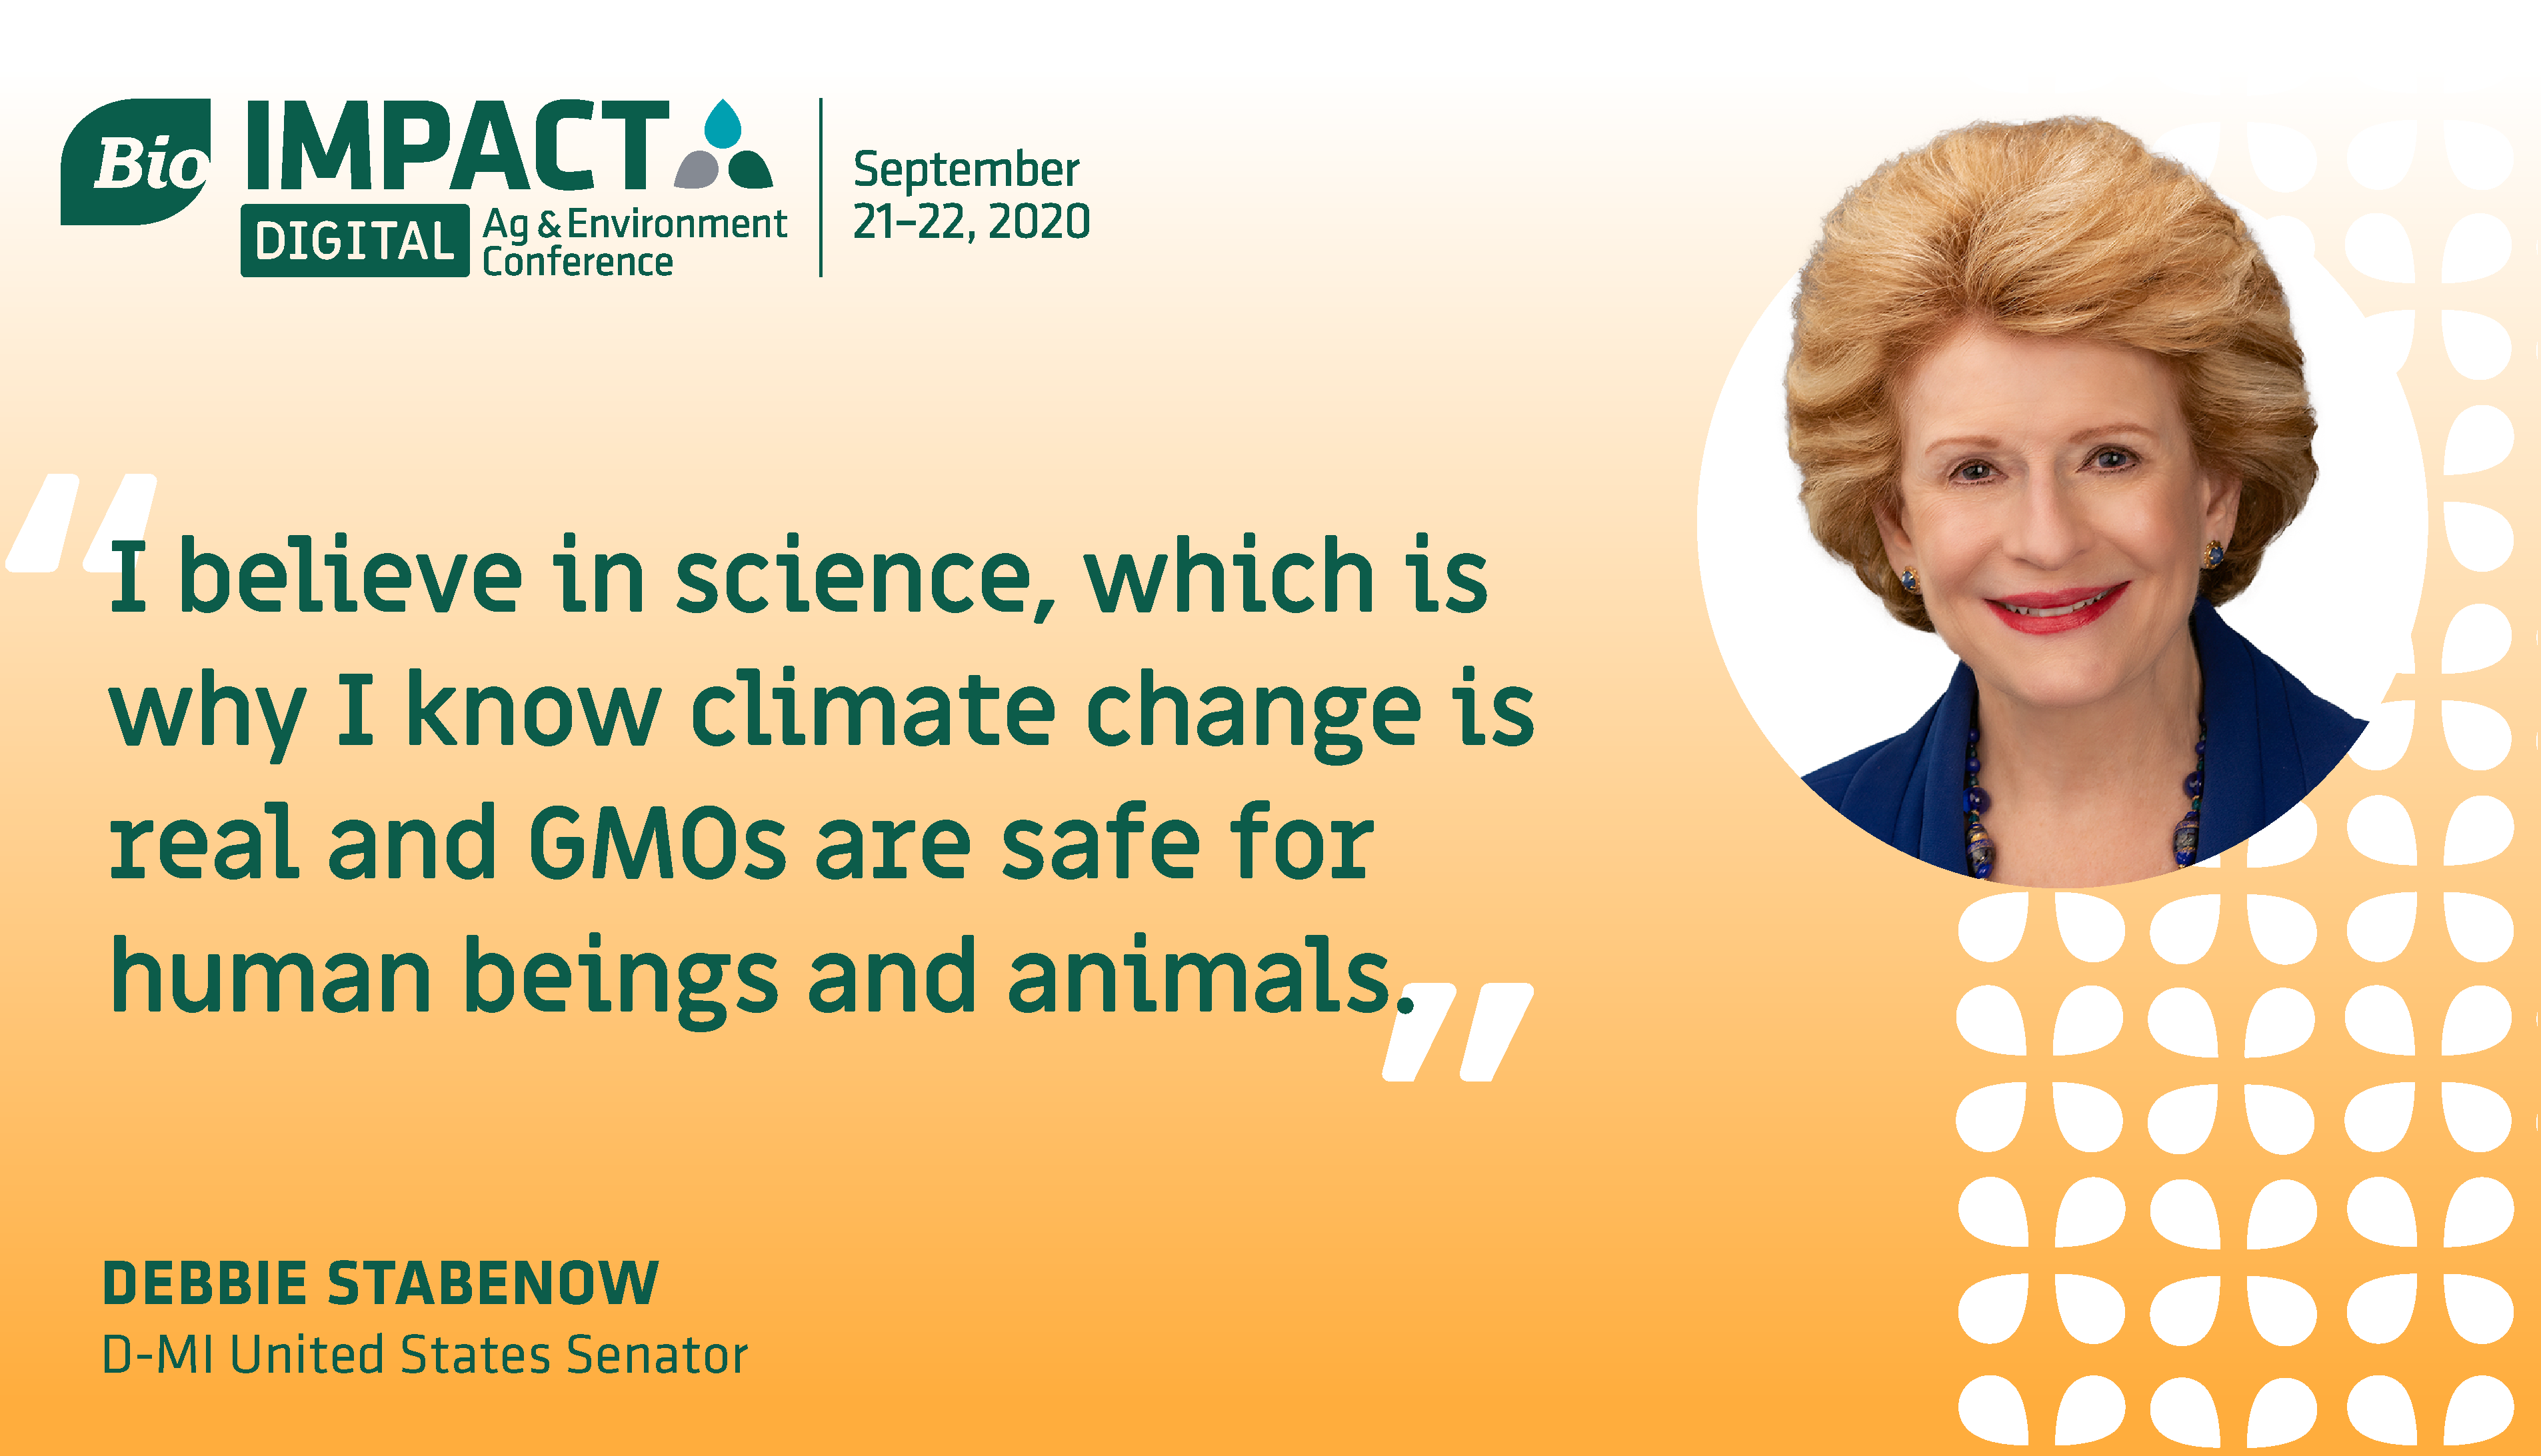 U.S. Sen. Debbie Stabenow (D-MI): "I believe in science."